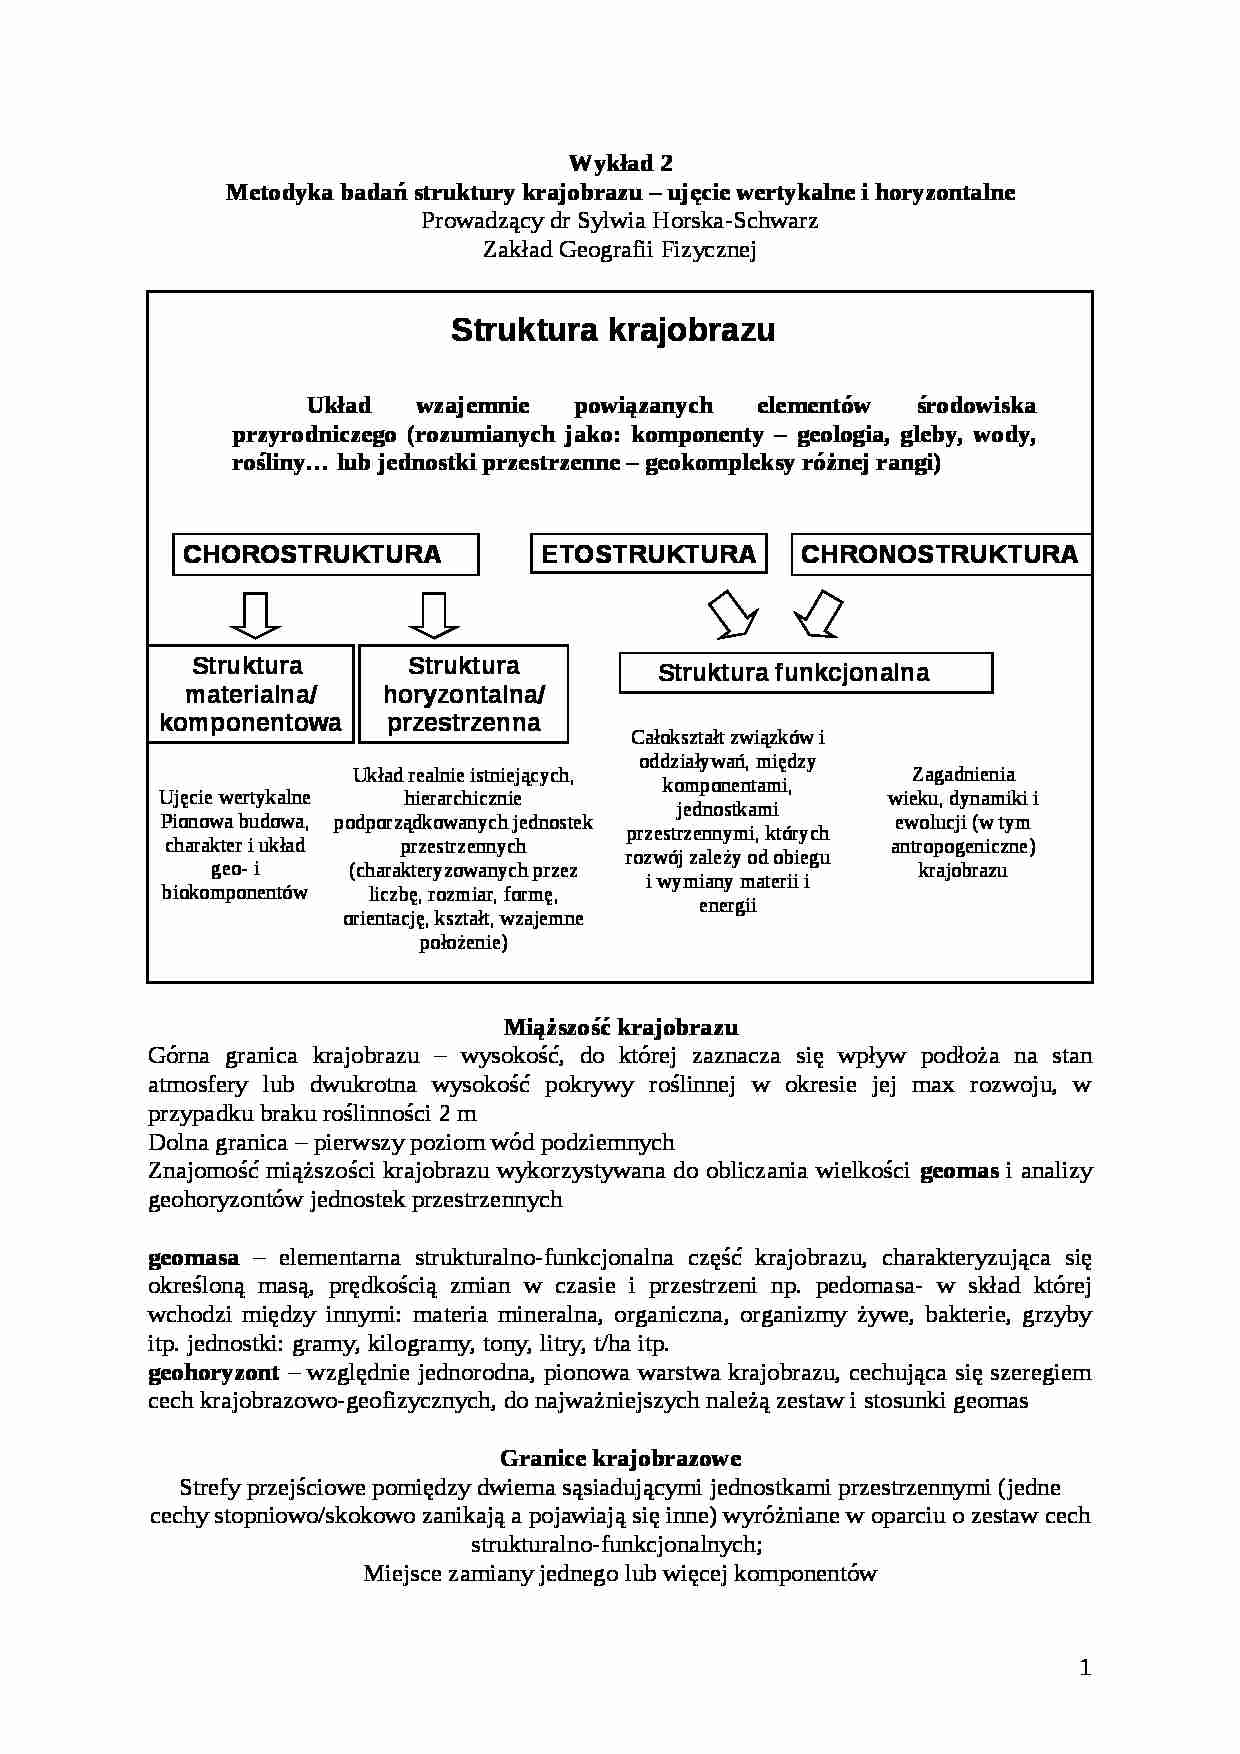 Kompleksowa geografia fizyczna Polski - Wykład 2: Metodyka badań struktury krajobrazu - strona 1